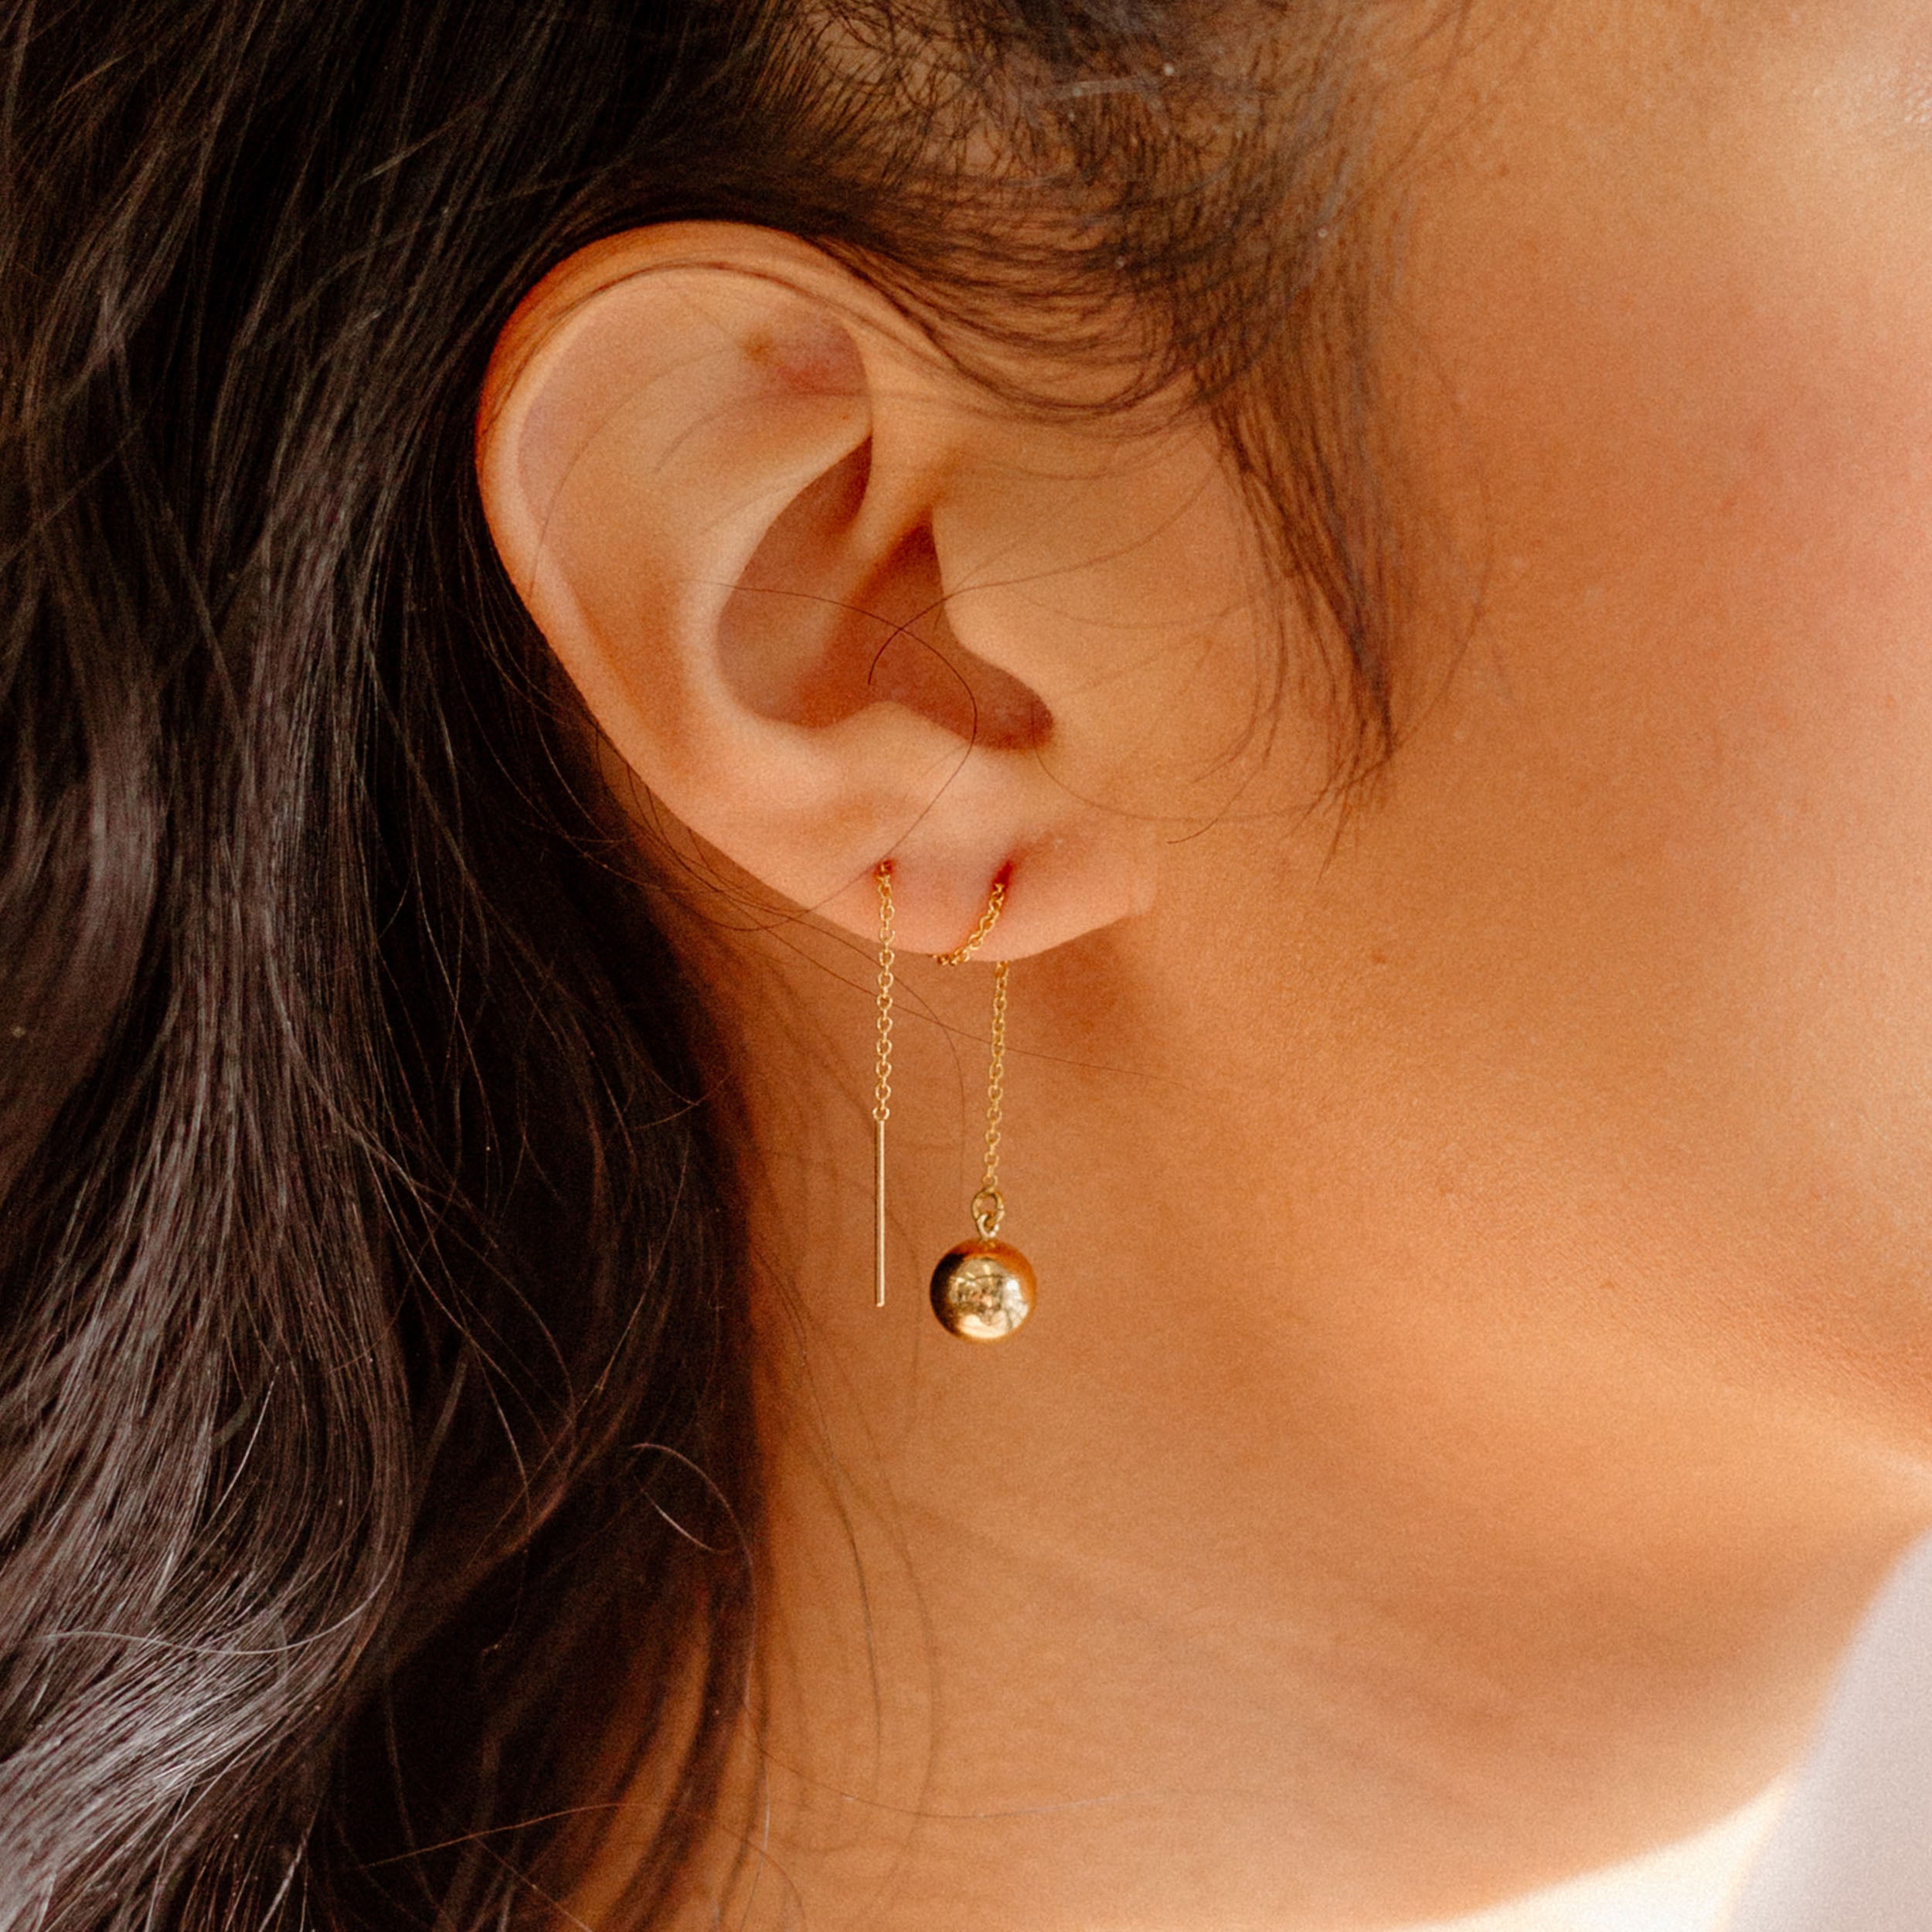 22 Nice-Ish Pieces Of Jewelry You'll Wear Every Day | Thread earrings,  Earings piercings, Ear climbers earrings